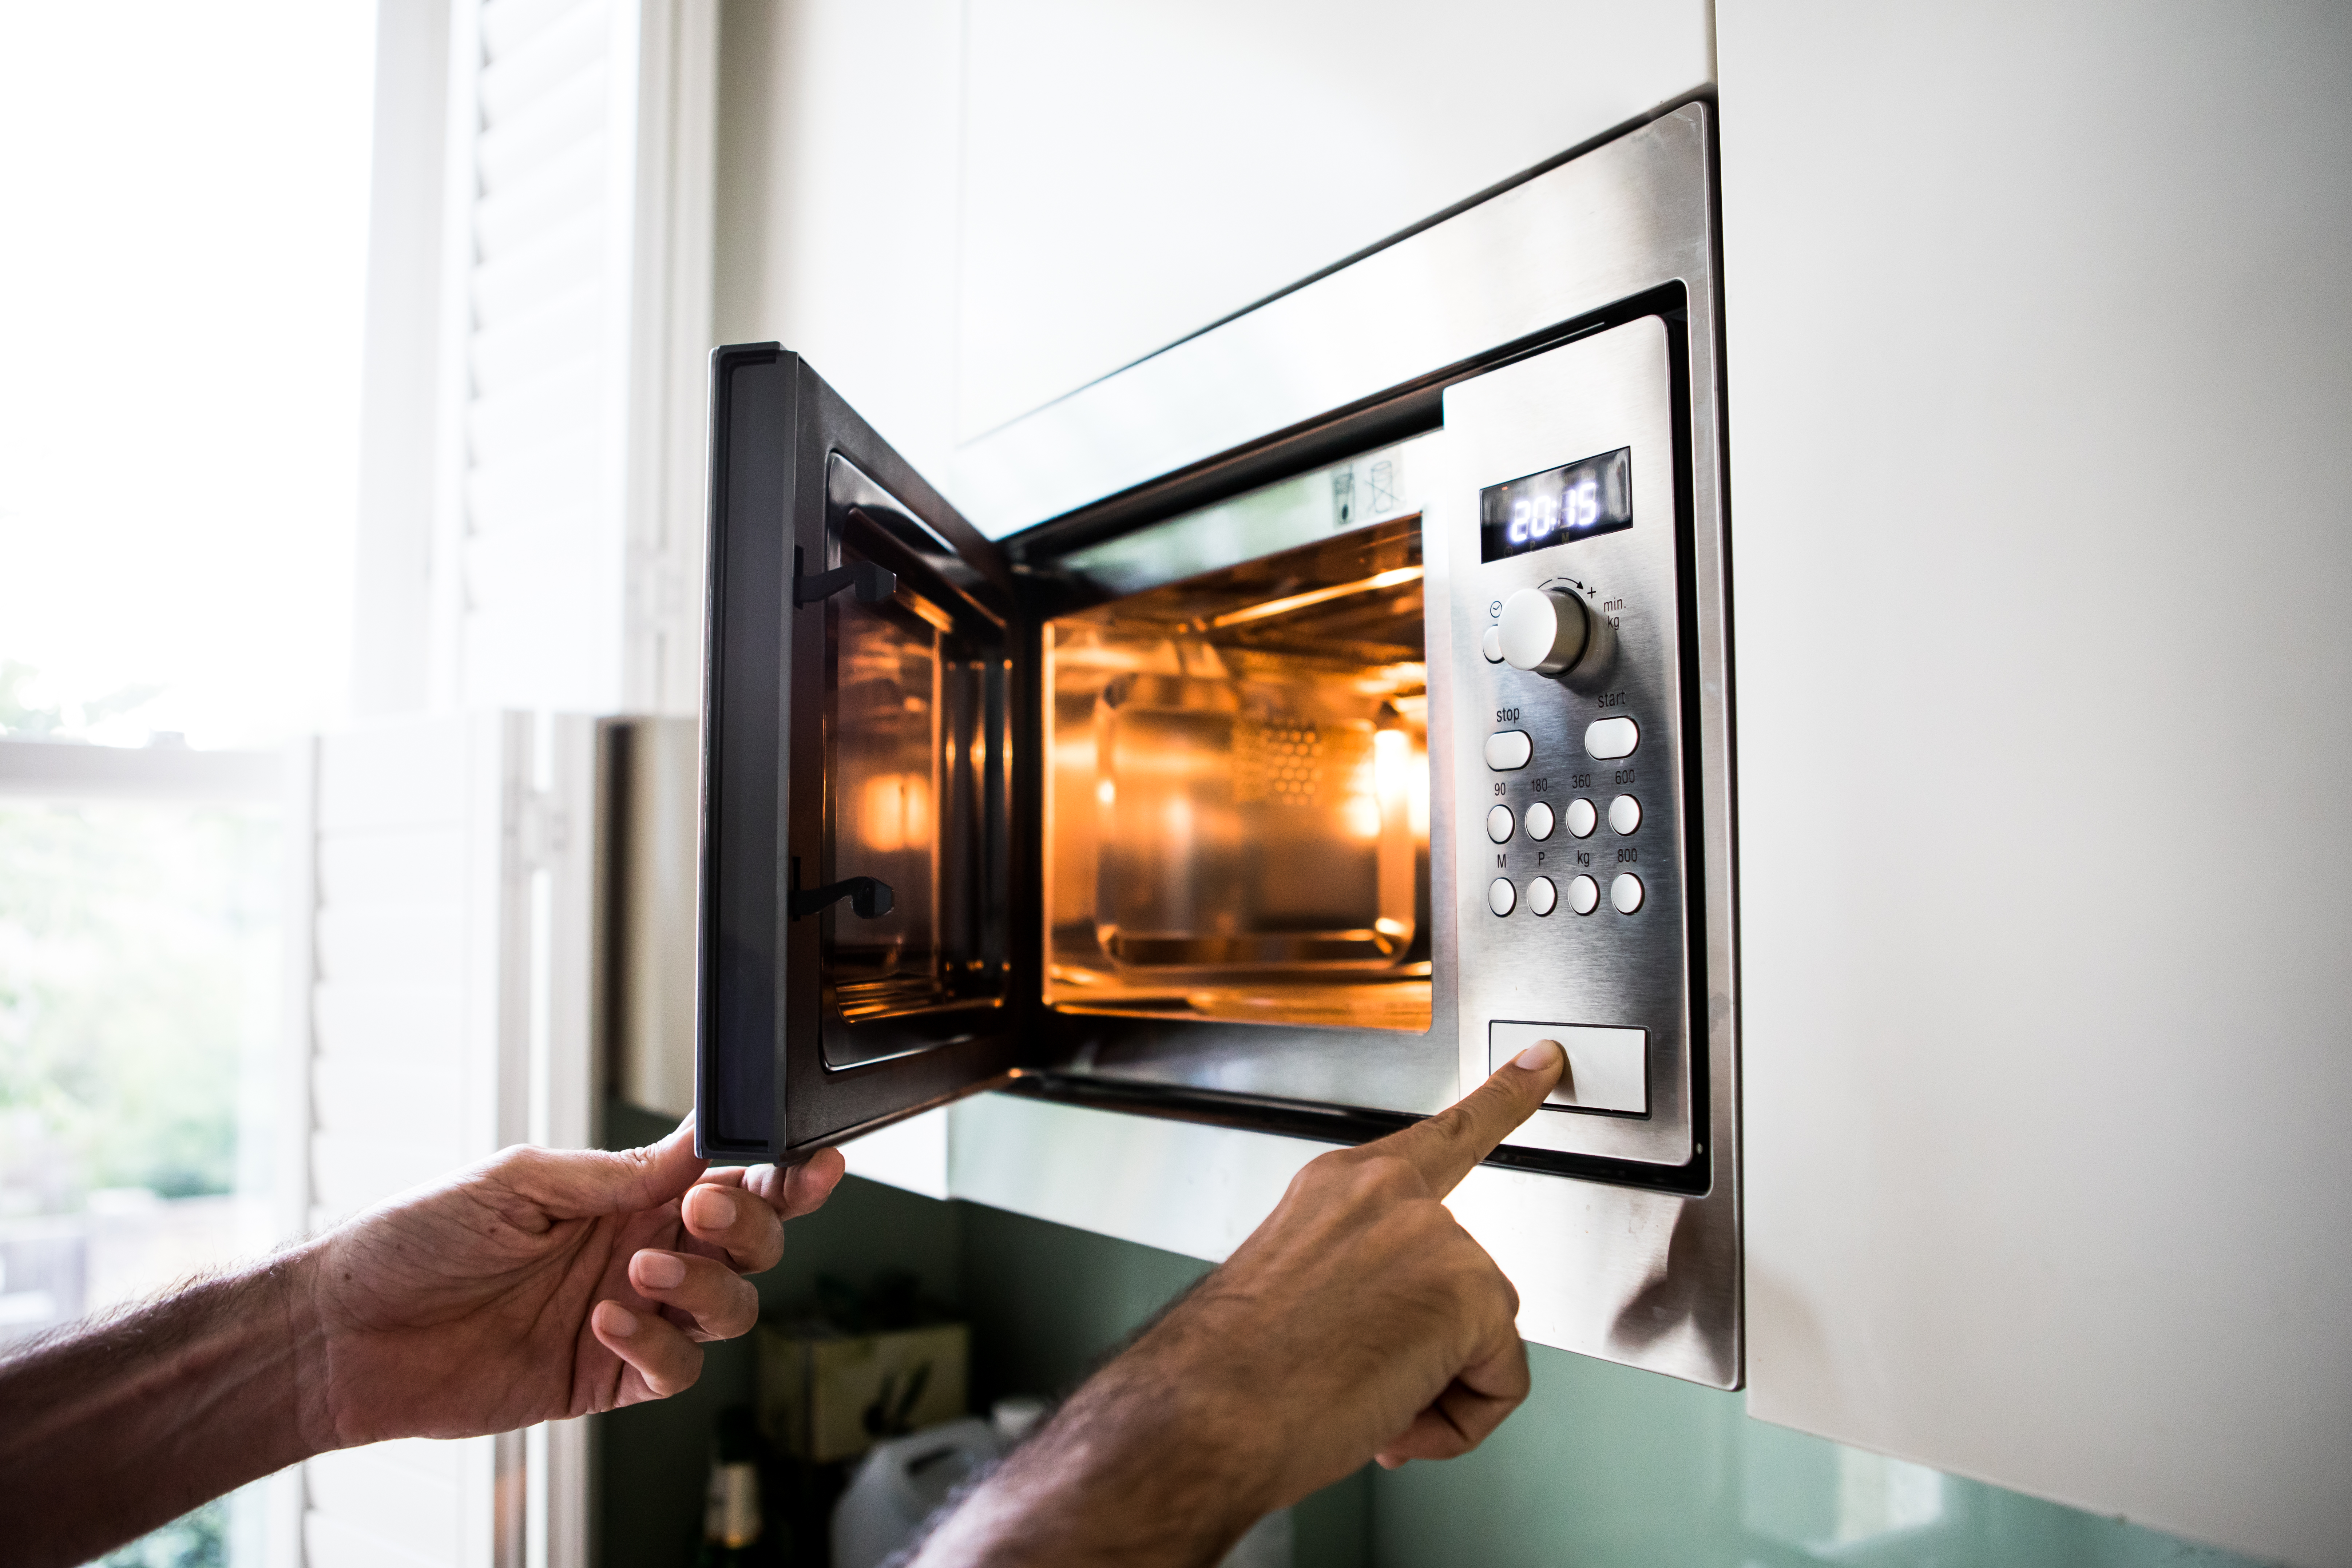 Recipiente para cocer huevos en microondas Microwave Sistema